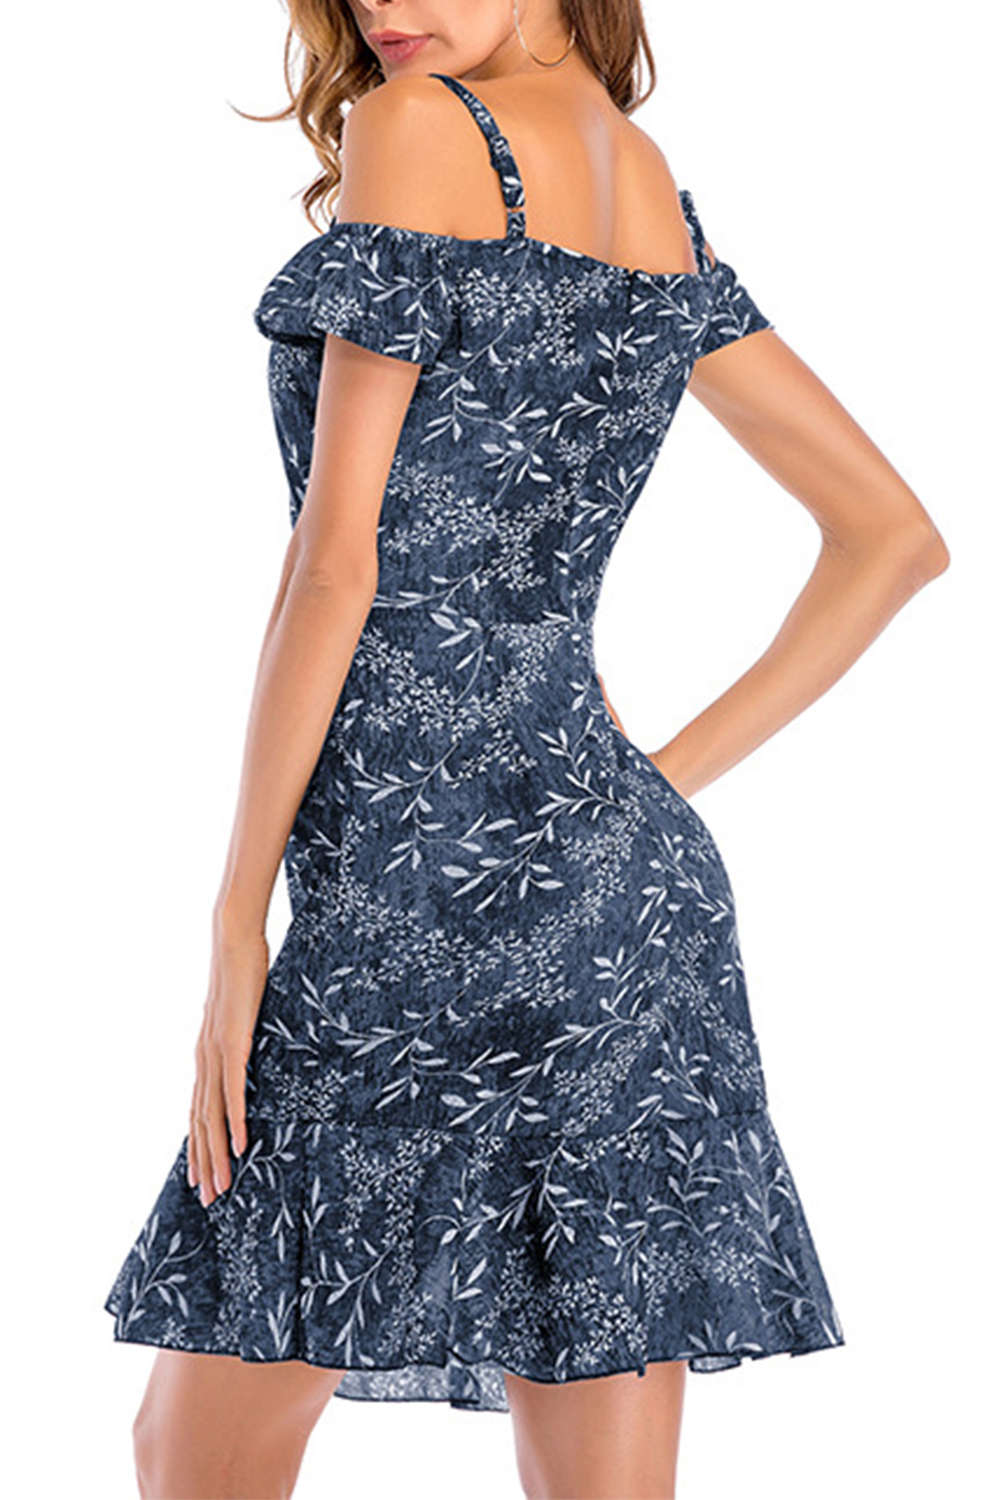 Iyasson Cold-shoulder Shirred Sides Floral Midi Dress